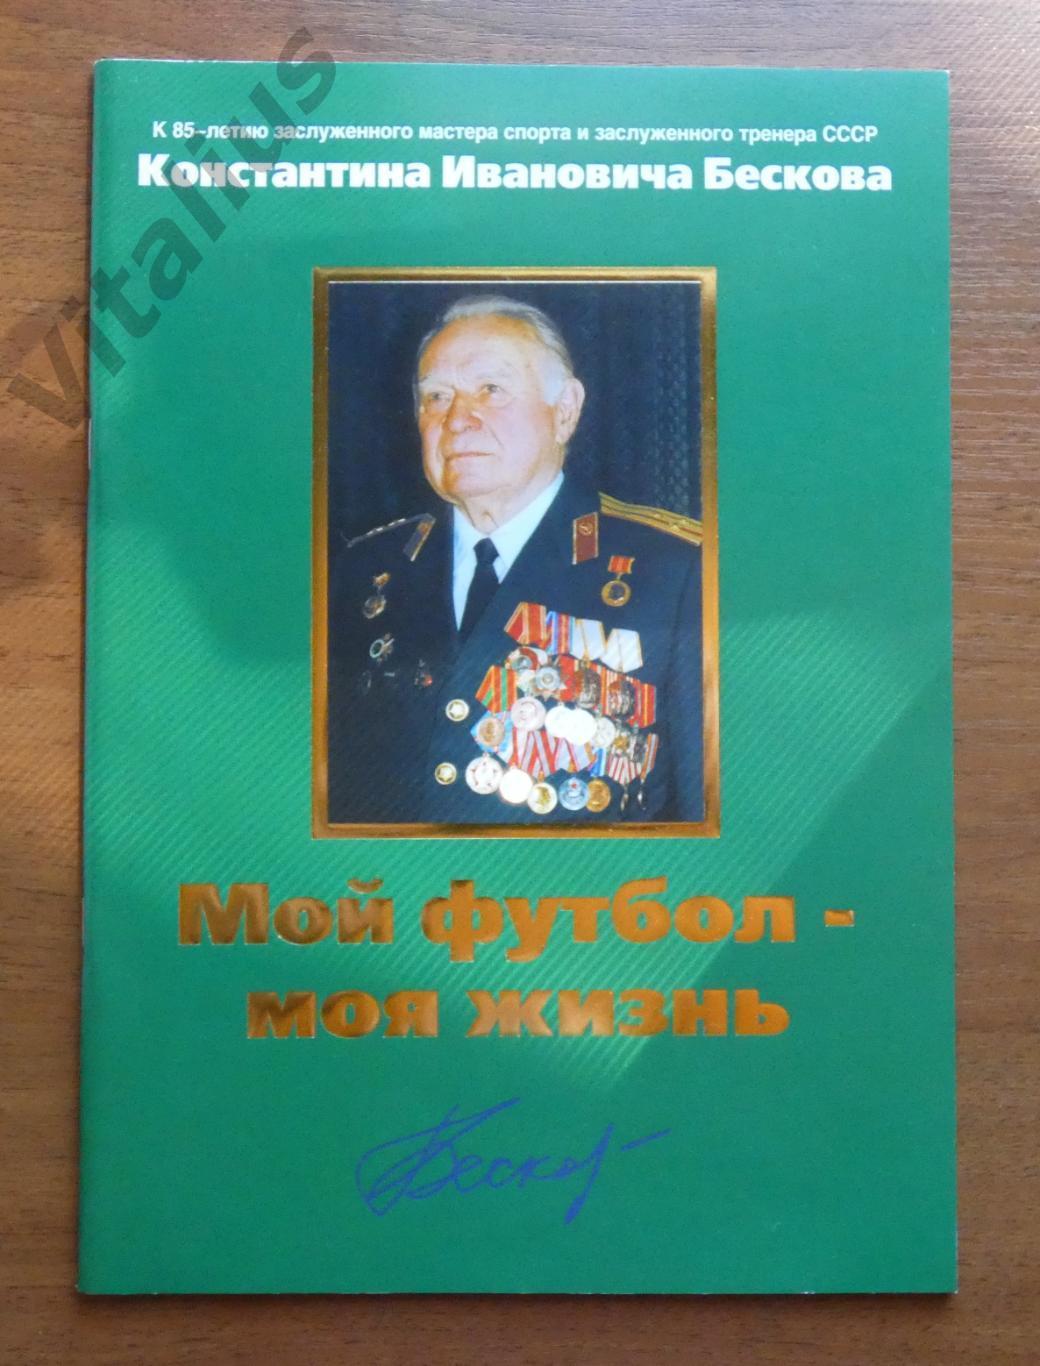 Книга К 85-летию К.И. Бескова. Мой футбол - моя жизнь. 2005 г.